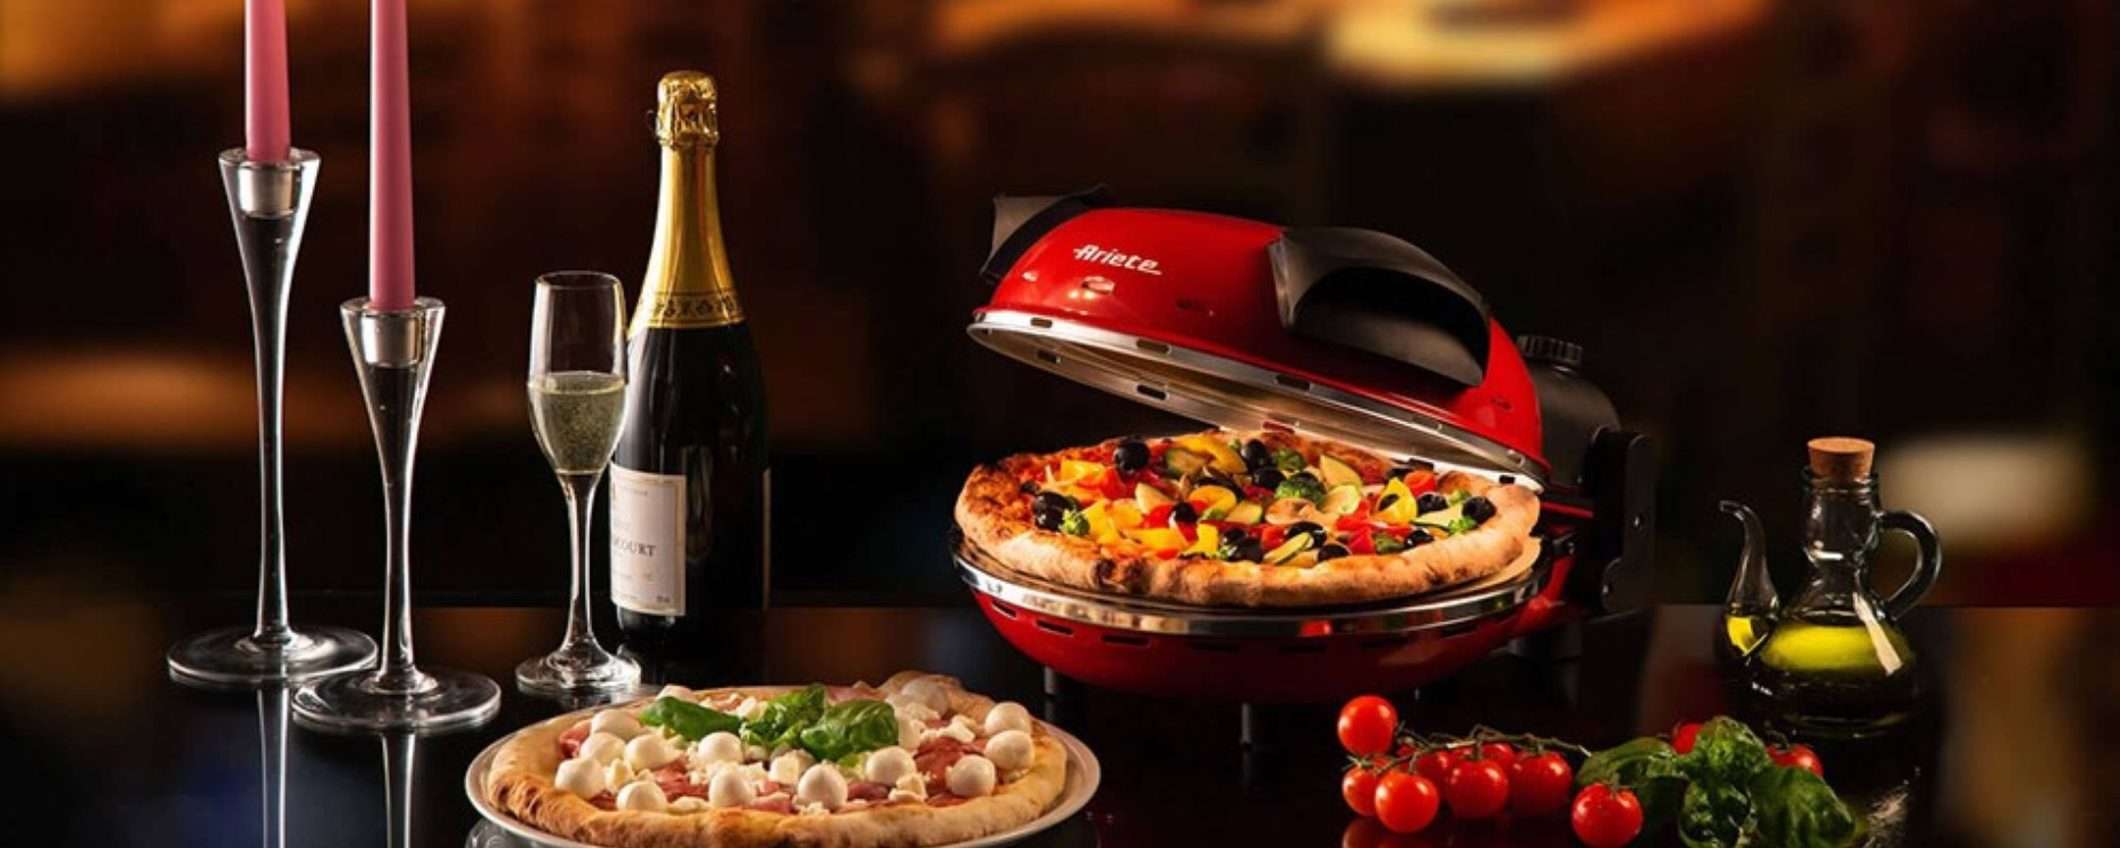 Forno pizza: il modello Ariete 909 in offerta a meno di 90€ su Unieuro